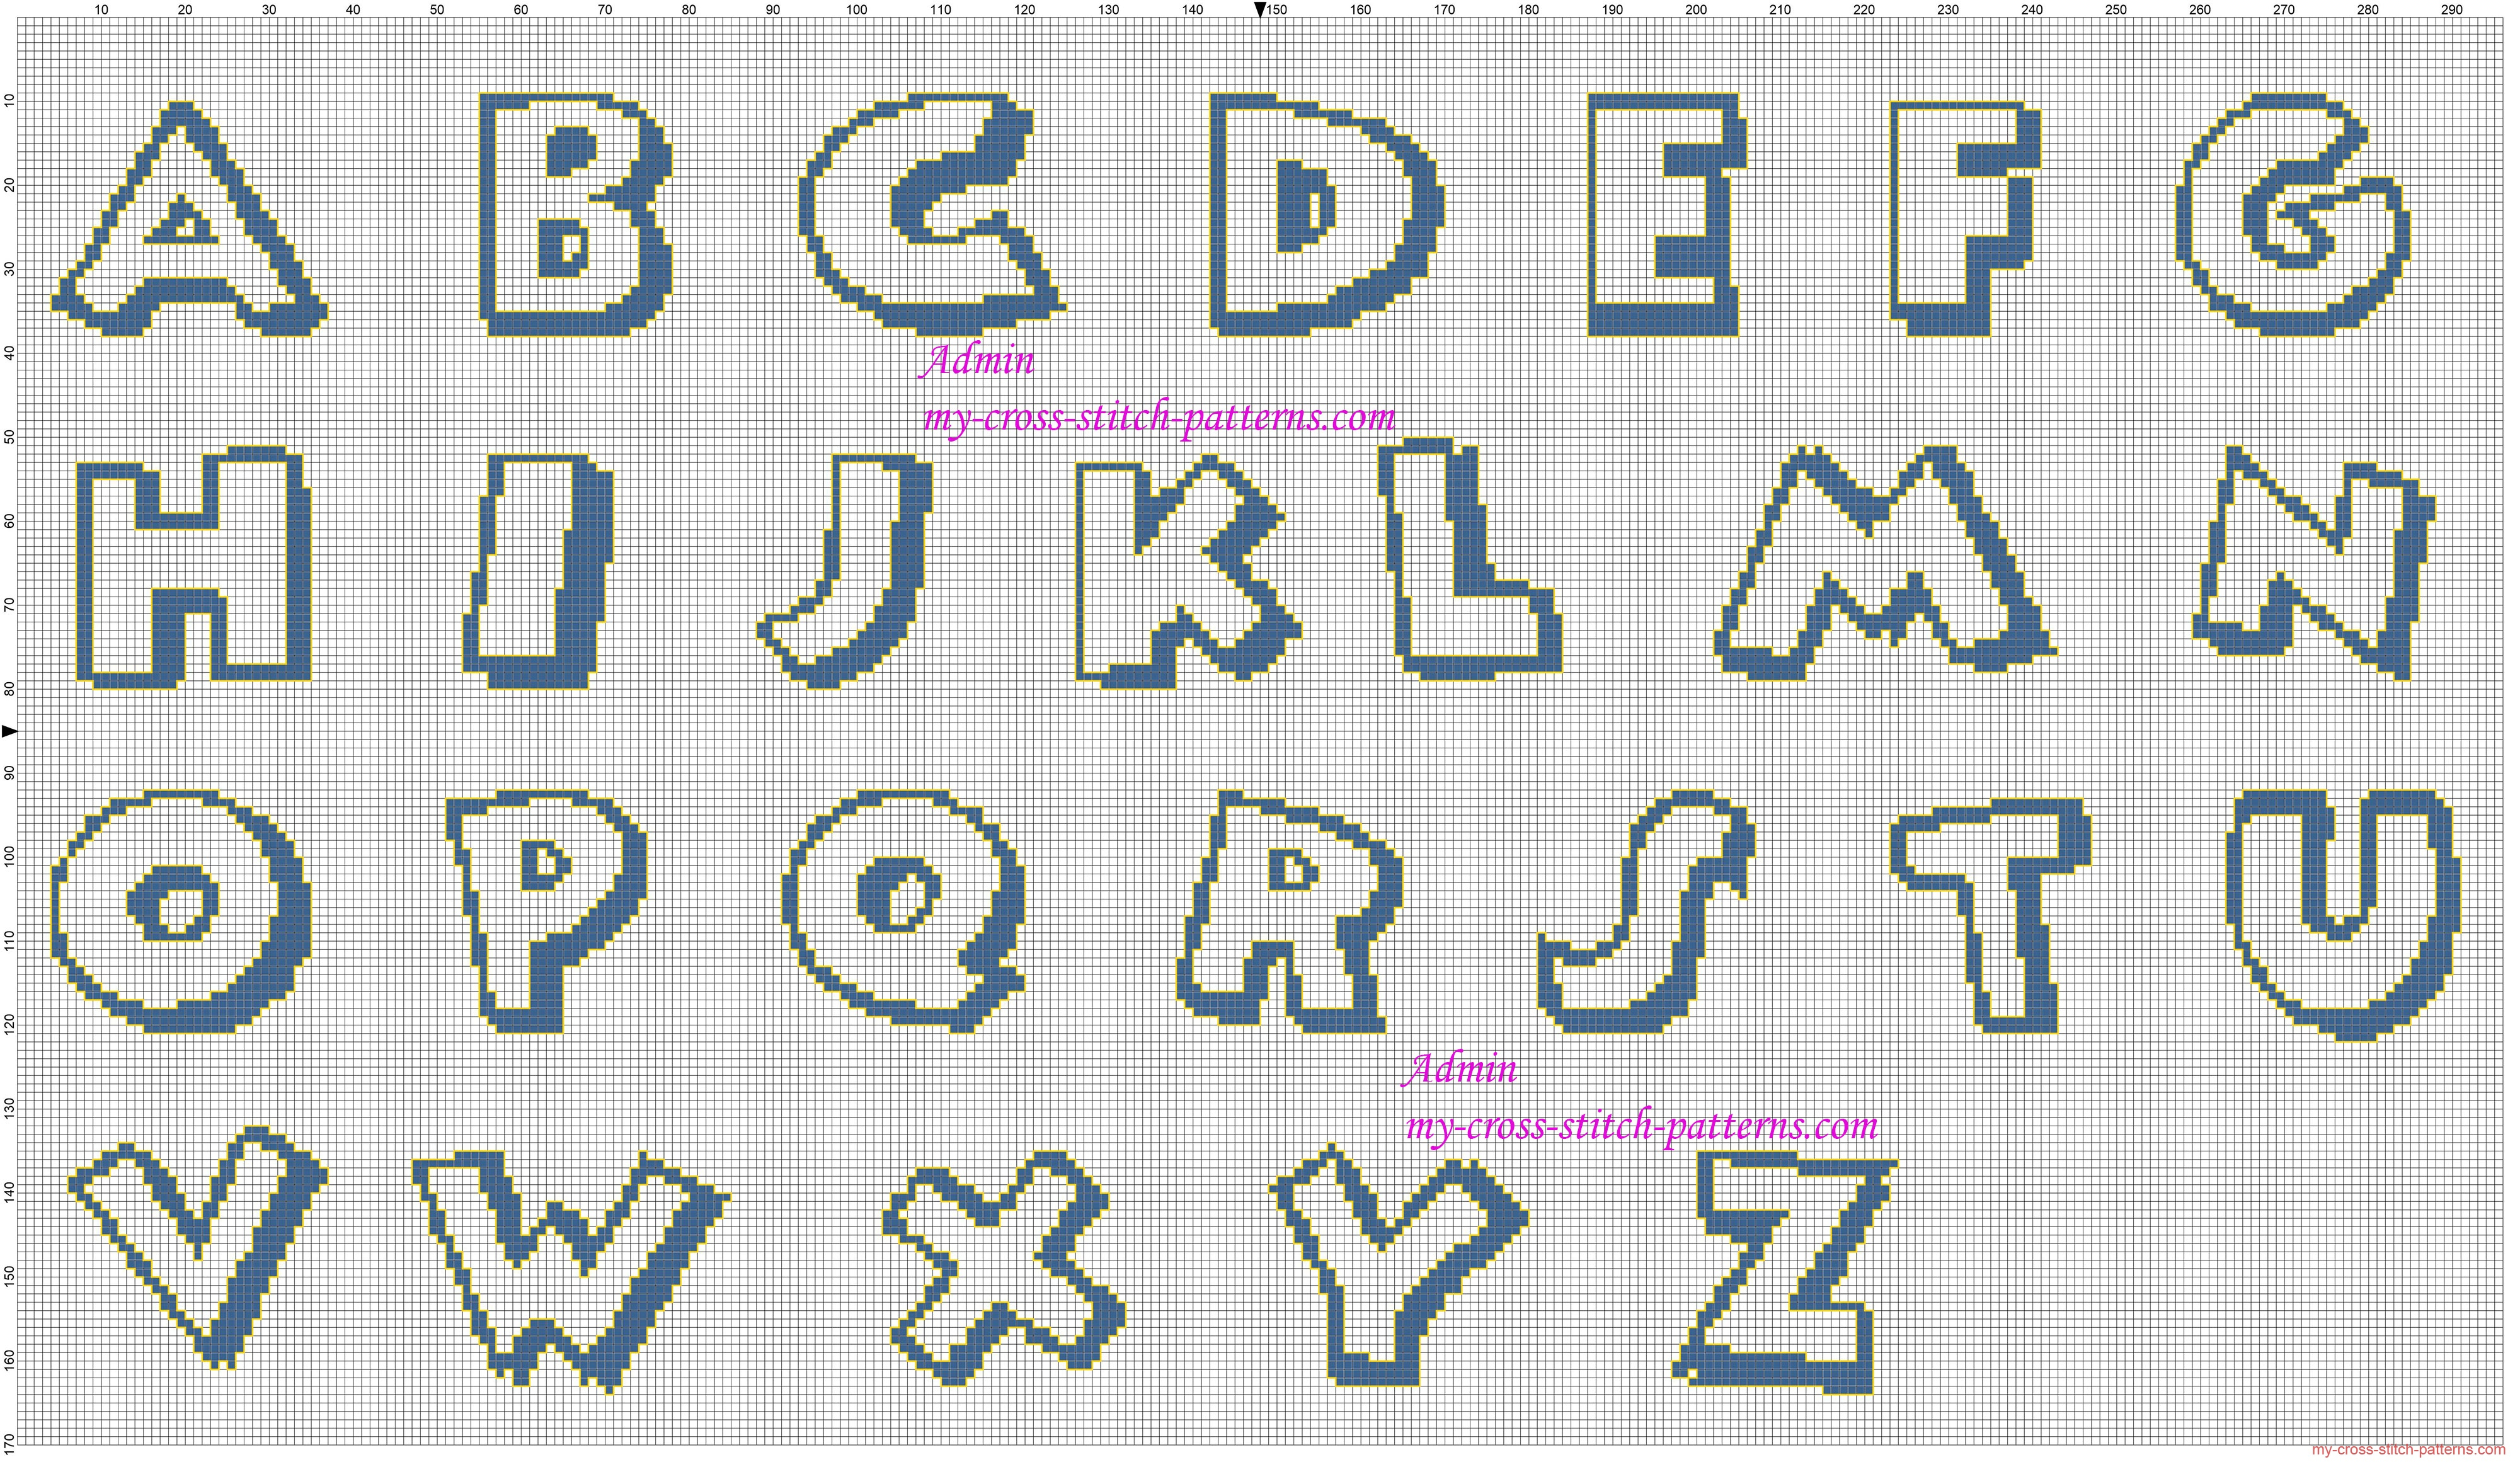 12 Disney Font Letter Printables Images - Disney Font Alphabet - Free Printable Disney Font Stencils